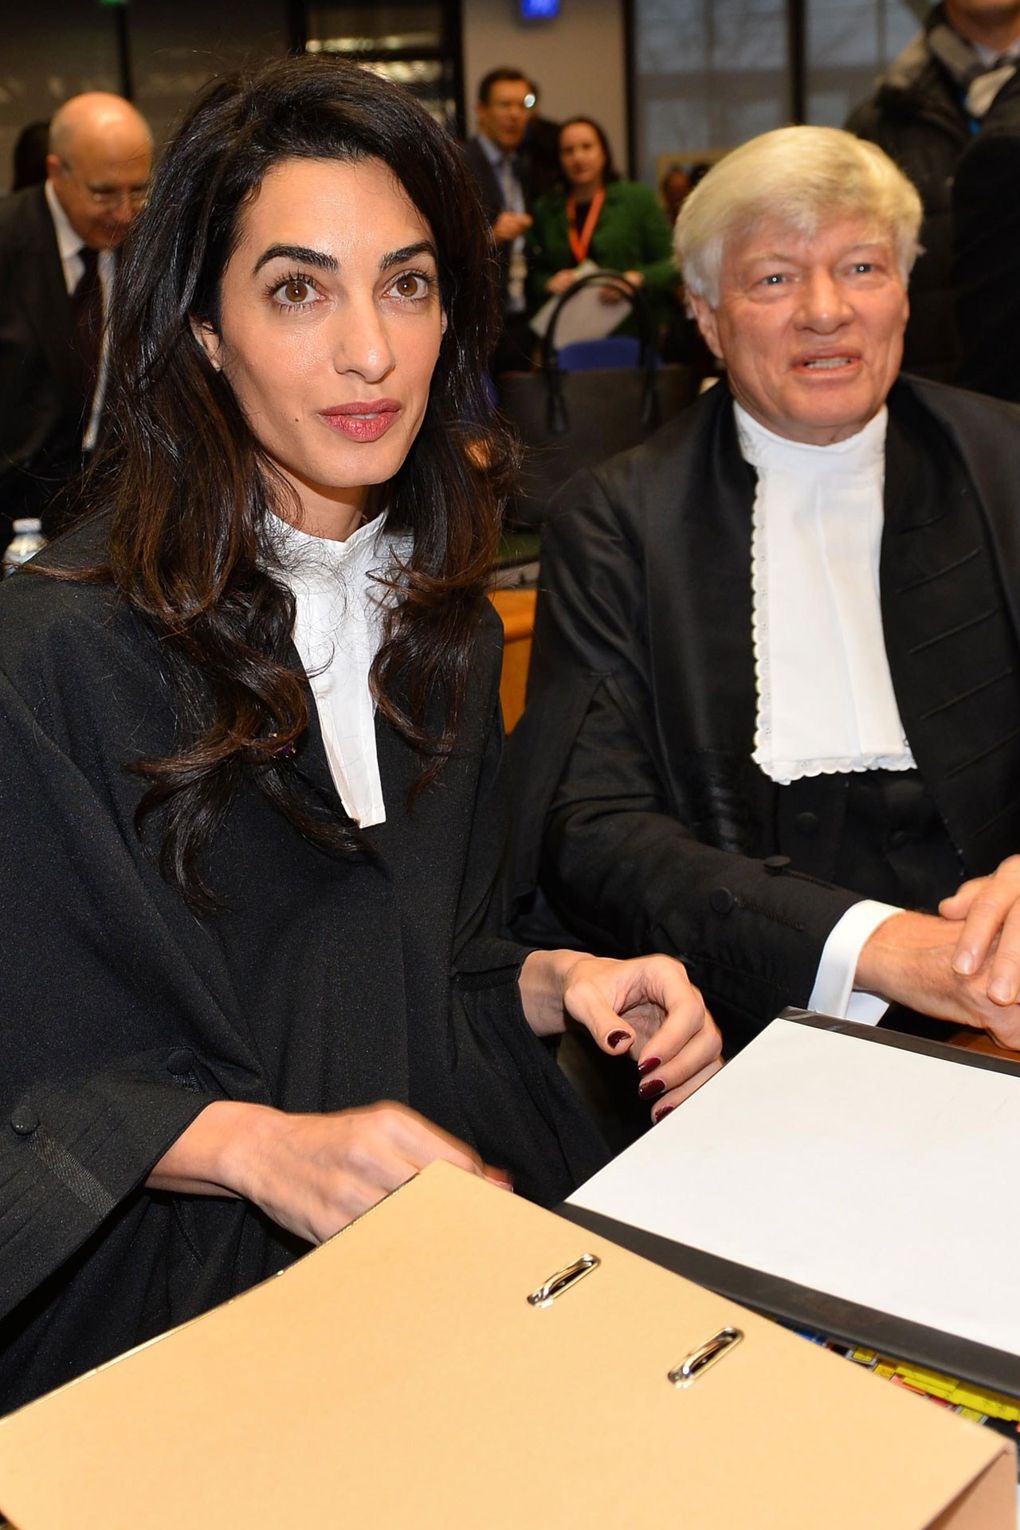 Strasbourgban, az Emberi Jogok Európai Bíróságán, Örményországot képviselvén, 2015-ben. Forrás: vogue.co.uk